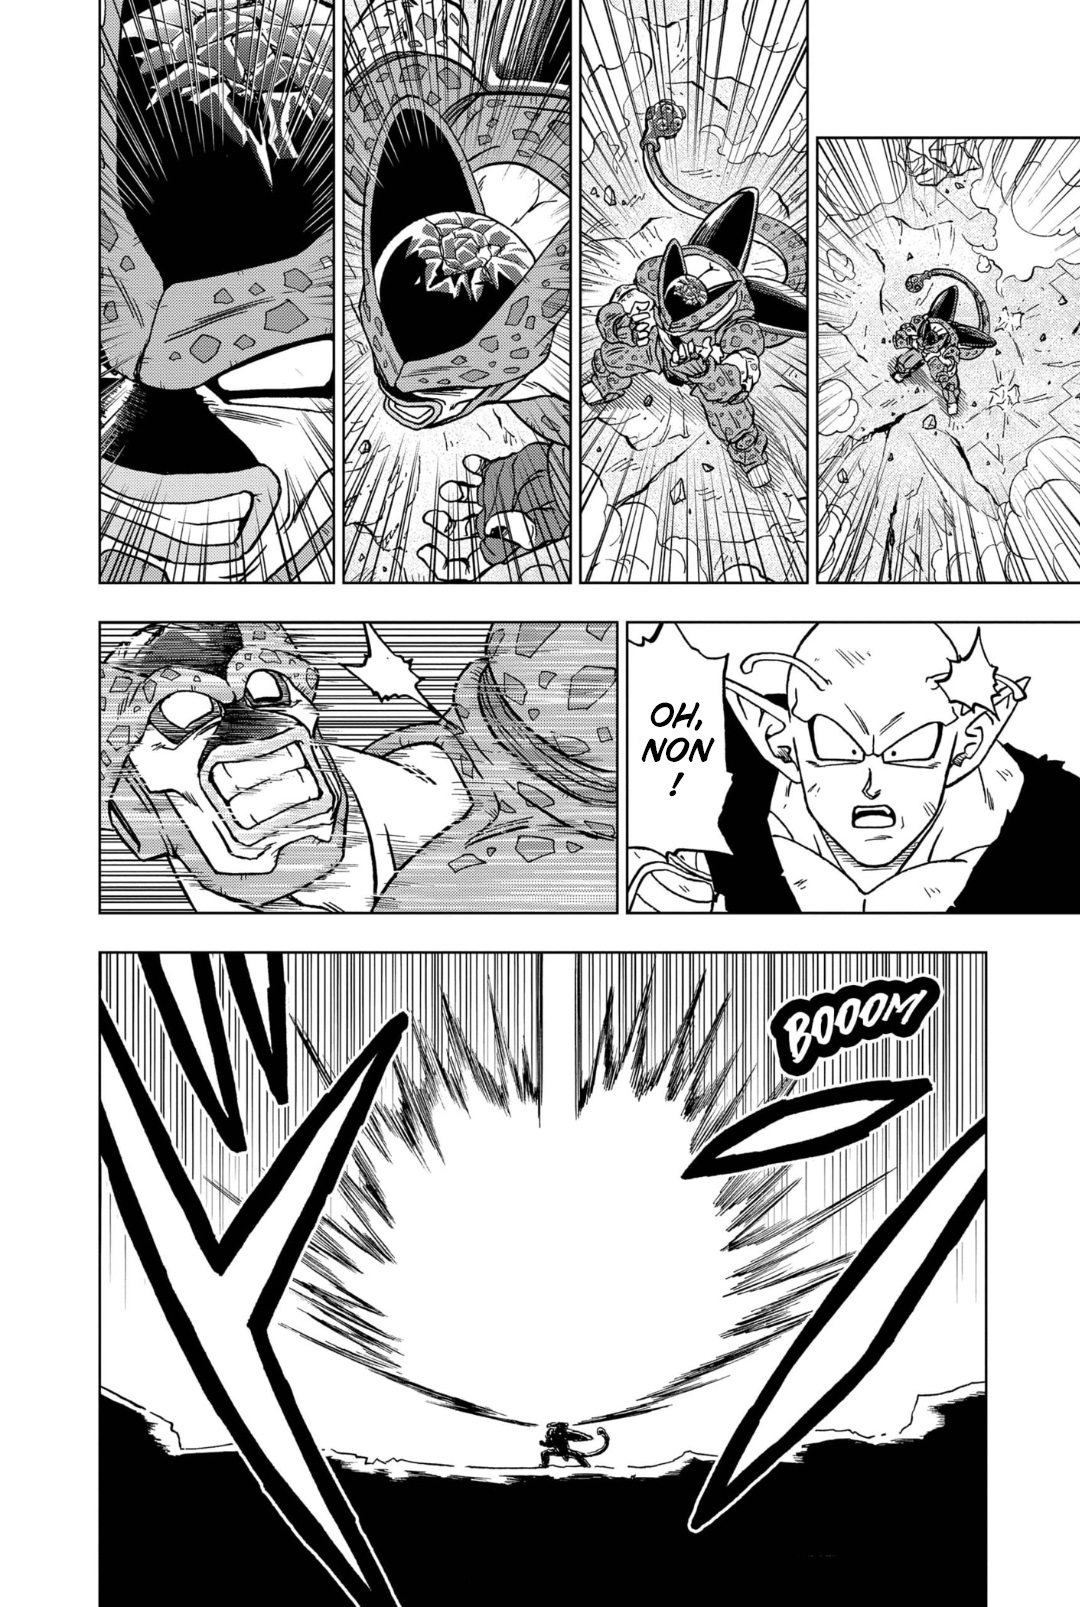 B-Manga : Lecture en ligne - Dragon Ball Super - Chapitre 098 - Page 2